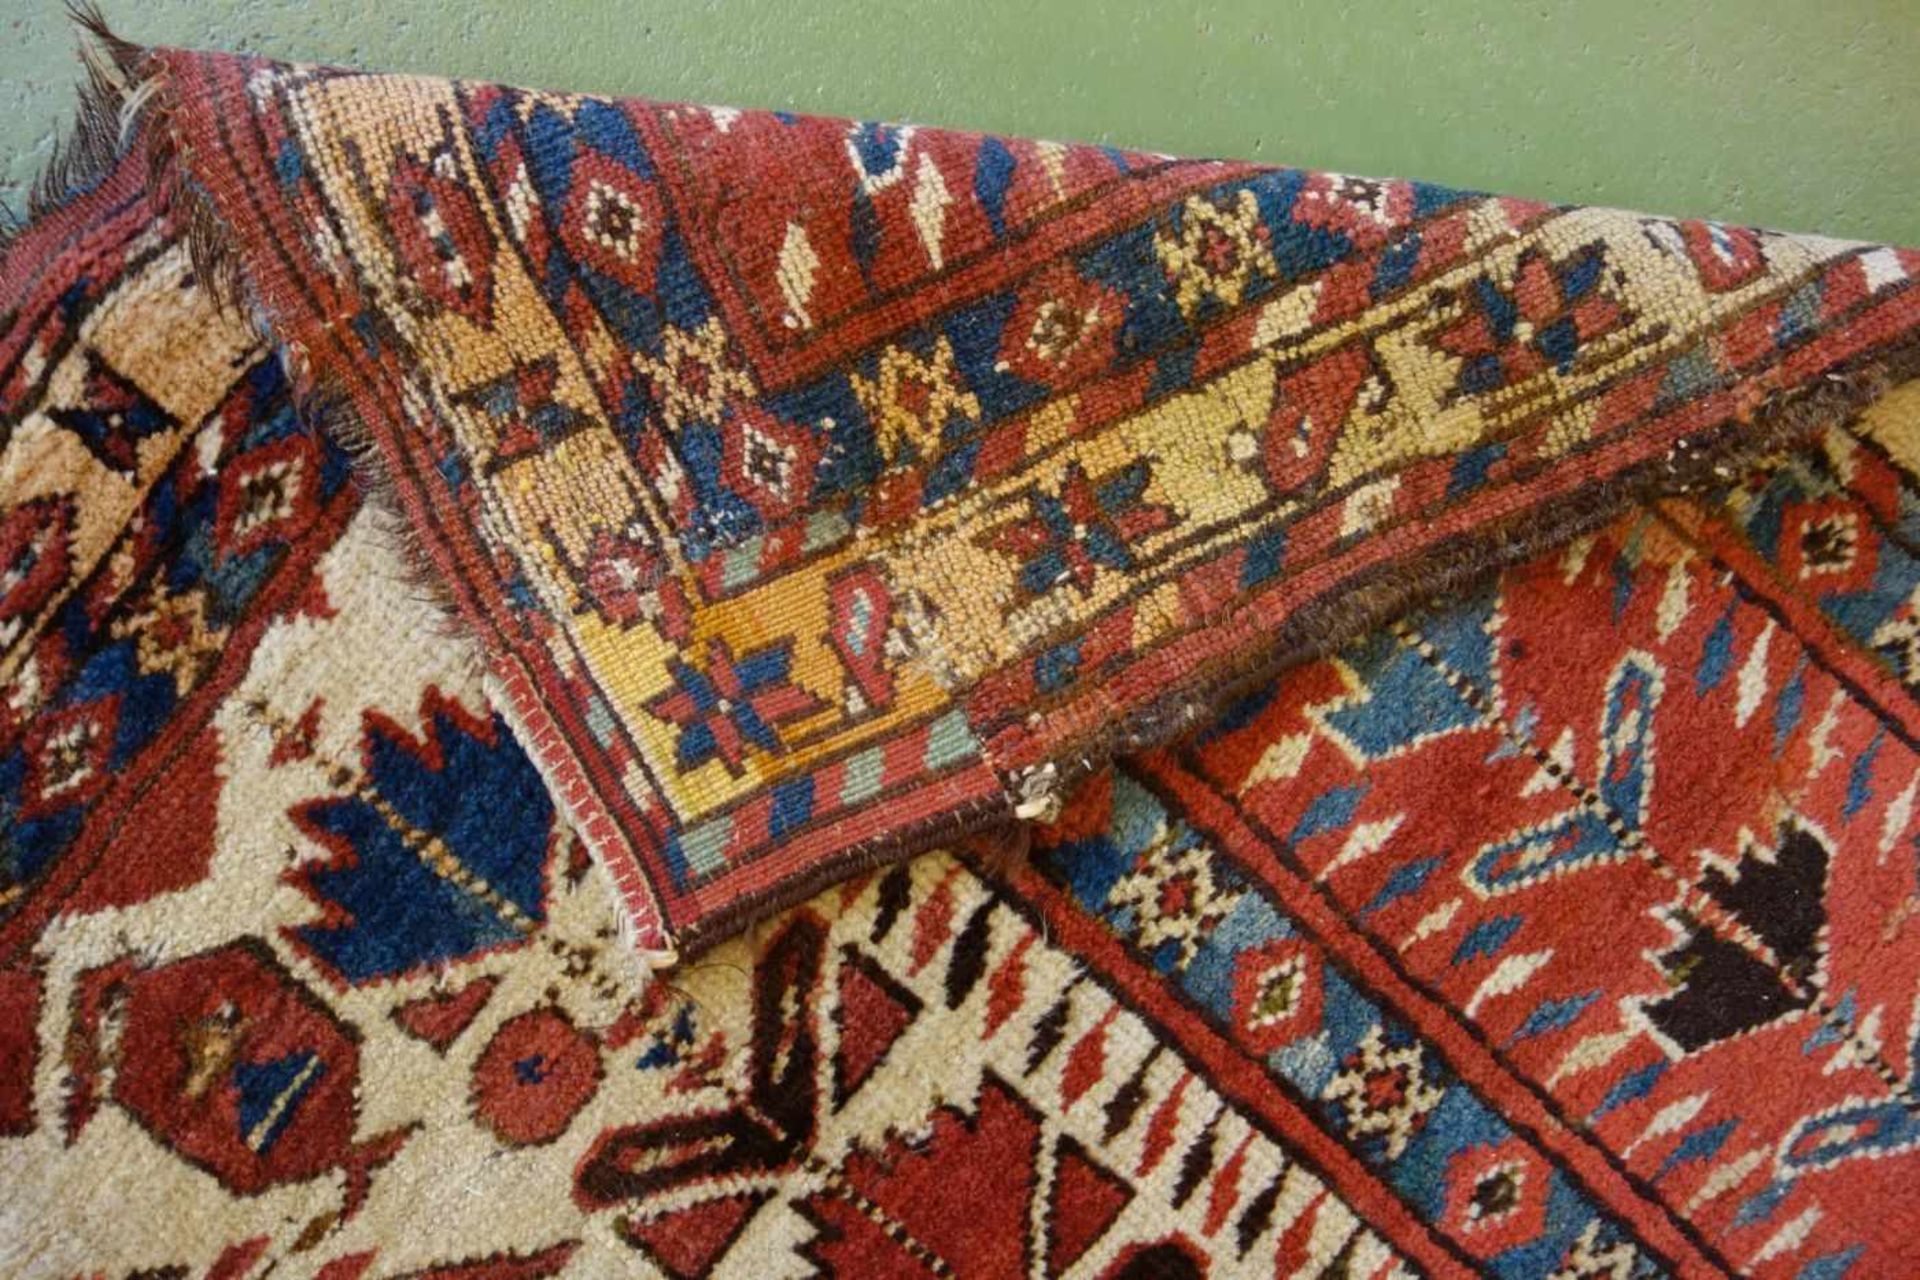 SCHMALER BESCHIR GEBETSTEPPICH / prayer rug, wohl 2. H. 19. Jh., Turkmenistan / Ersari-Beschir ( - Bild 6 aus 24